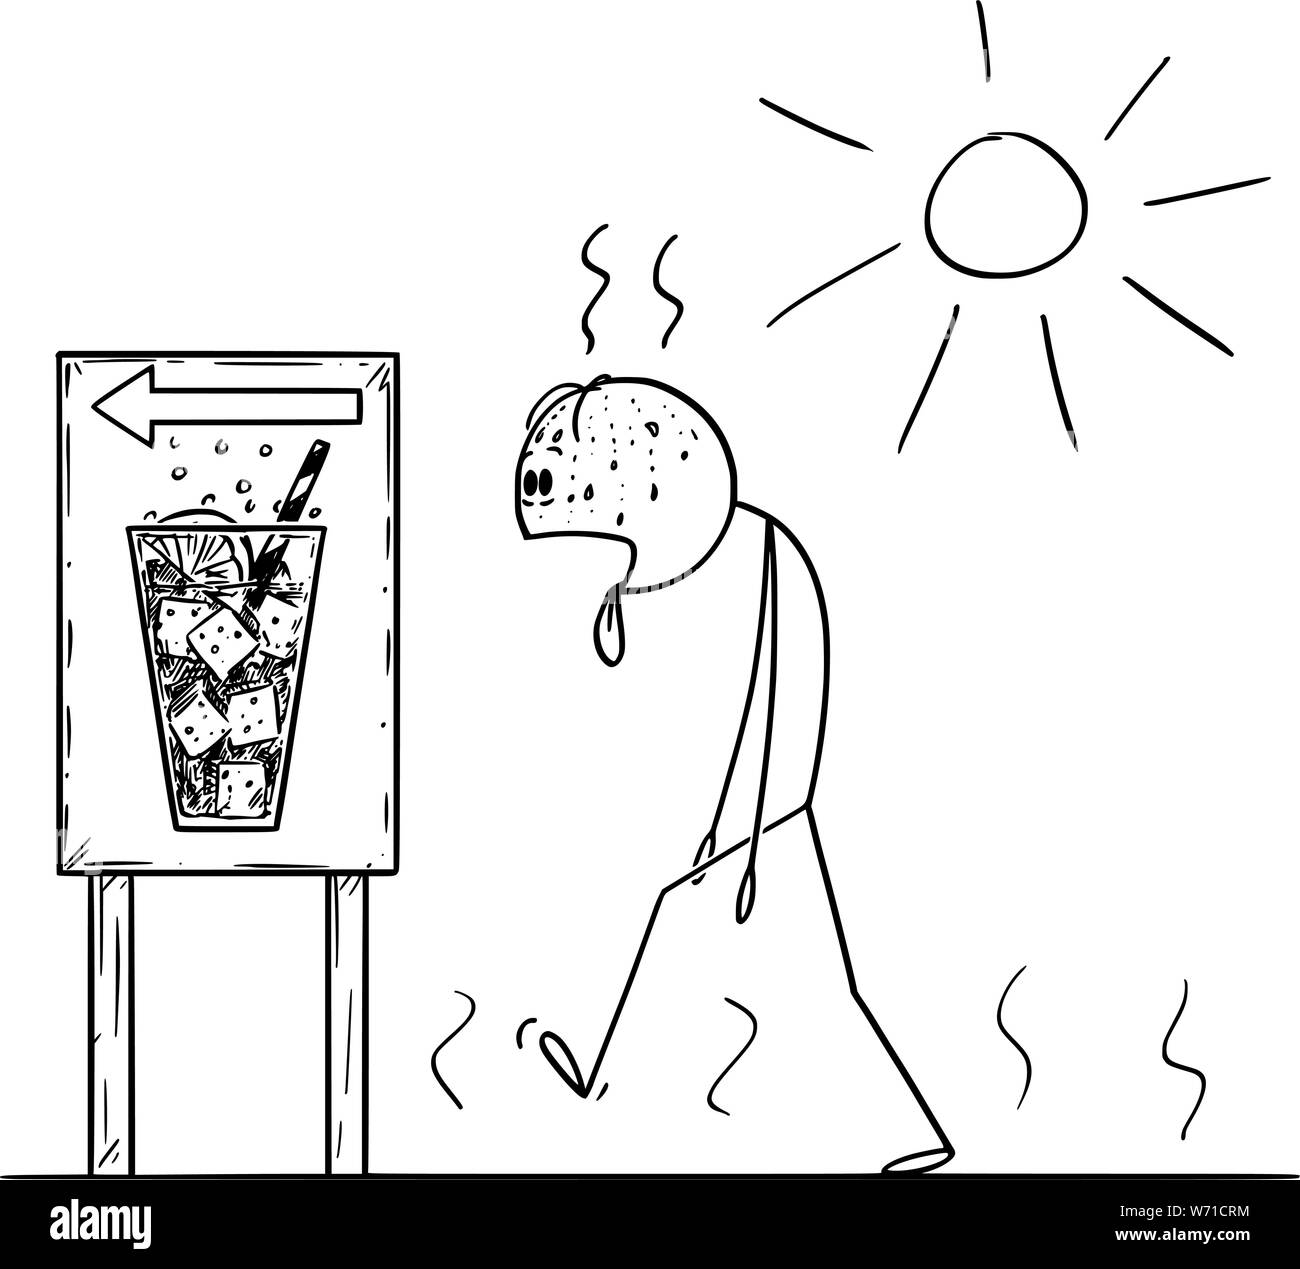 Vektor cartoon Strichmännchen Zeichnen konzeptionelle Darstellung der erschöpften Mann in sonniger Tag im Sommer kaltes Getränk oder Soda mit Zunge zu kaufen, Räkelt. Stock Vektor